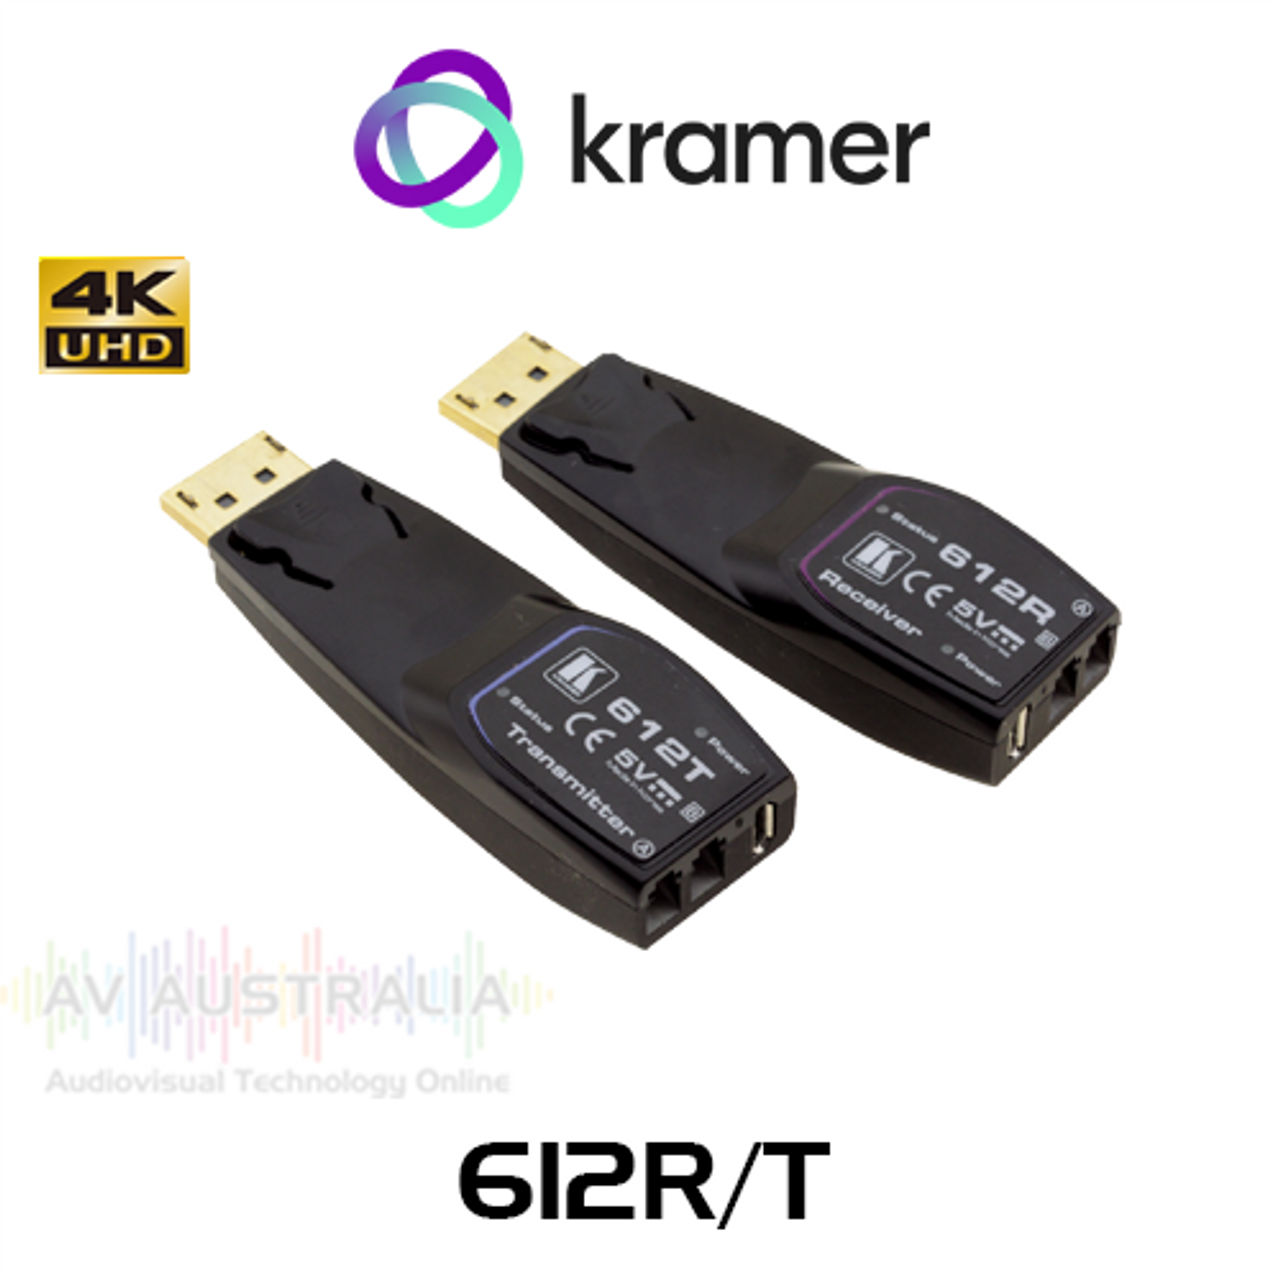 Kramer 612R/T 4K60 4:4:4 DP over MM Fiber Transmitter & Receiver Kit